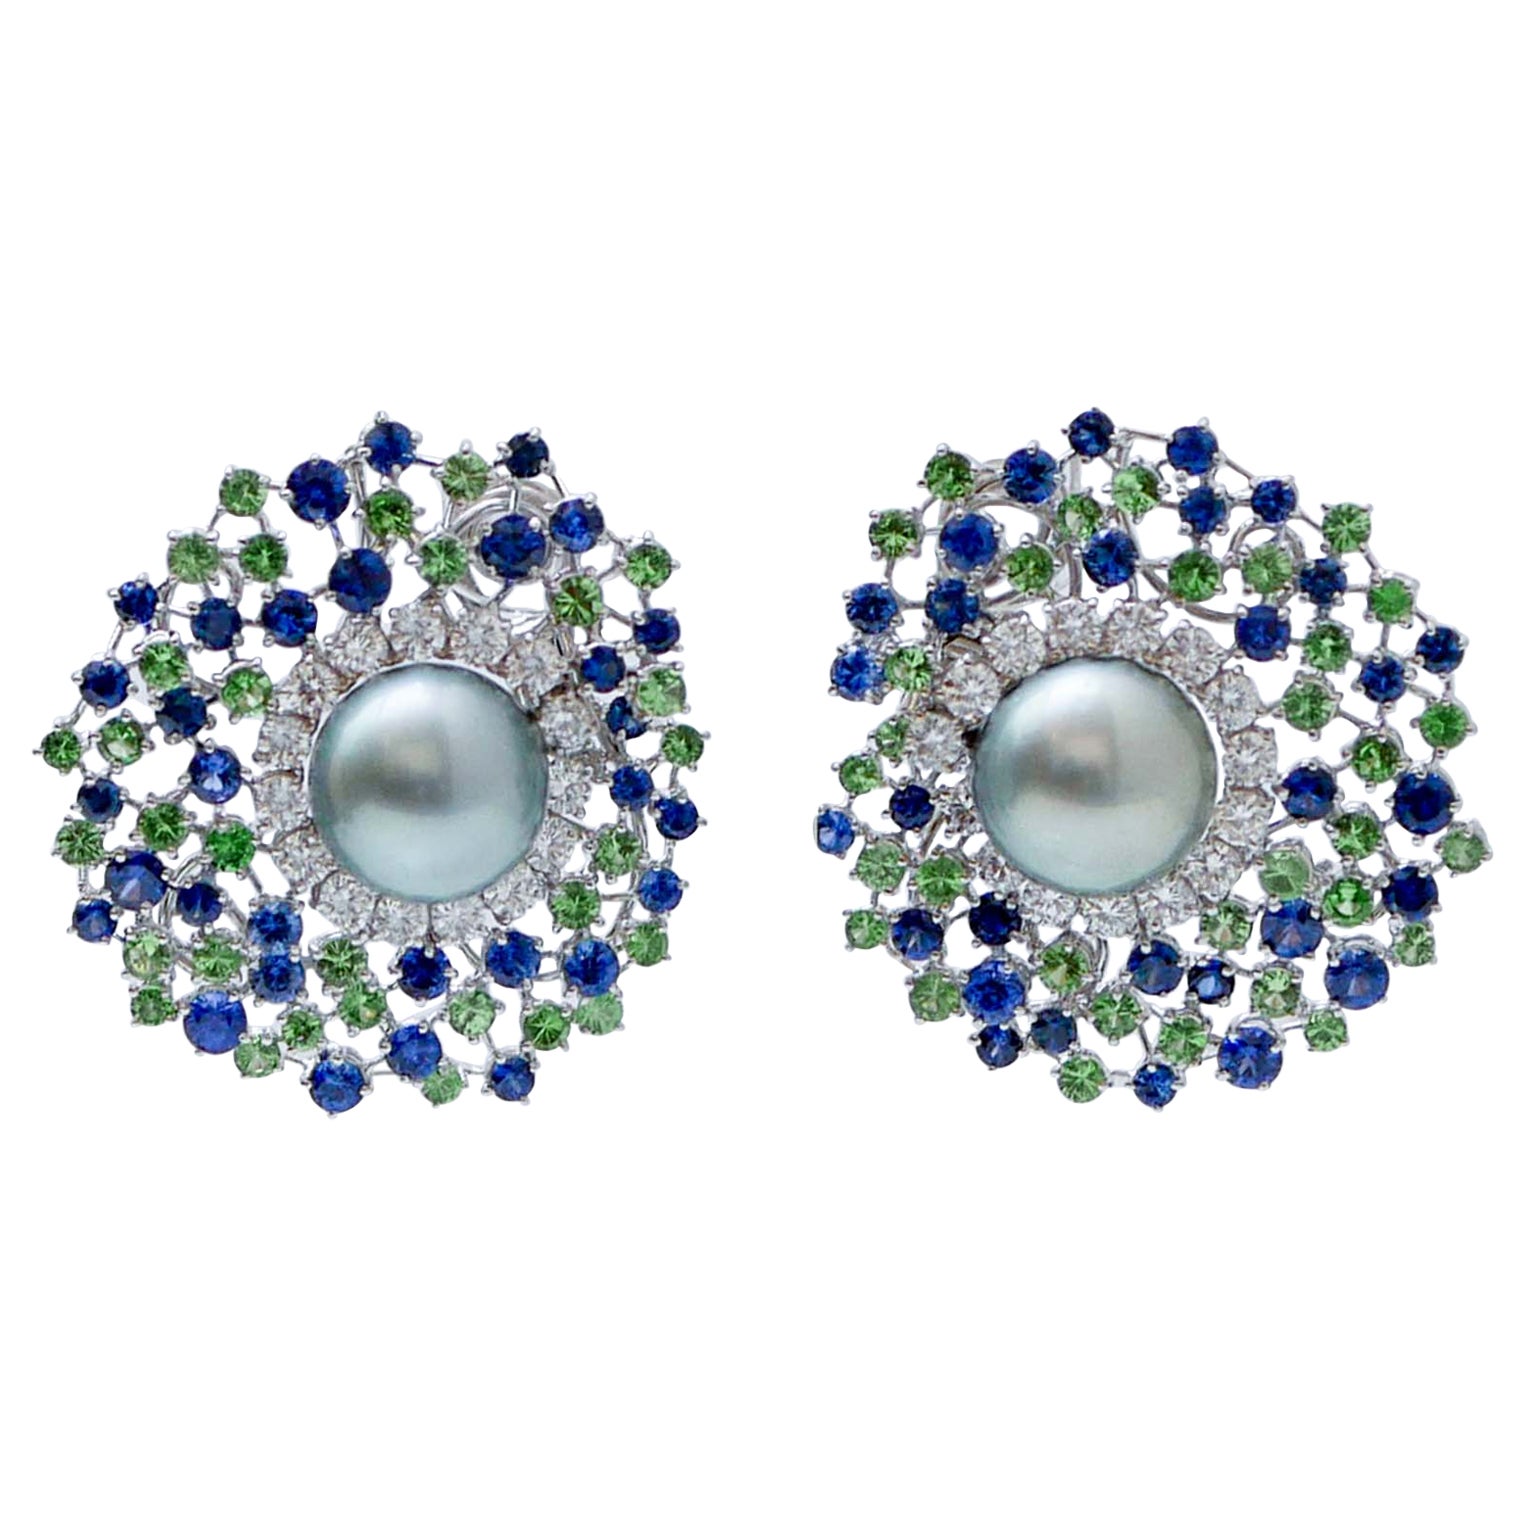 G/H  VVS Diamonds, Blue Sapphires, Tsavorites, Pearls, 18Kt White Gold Earrings For Sale